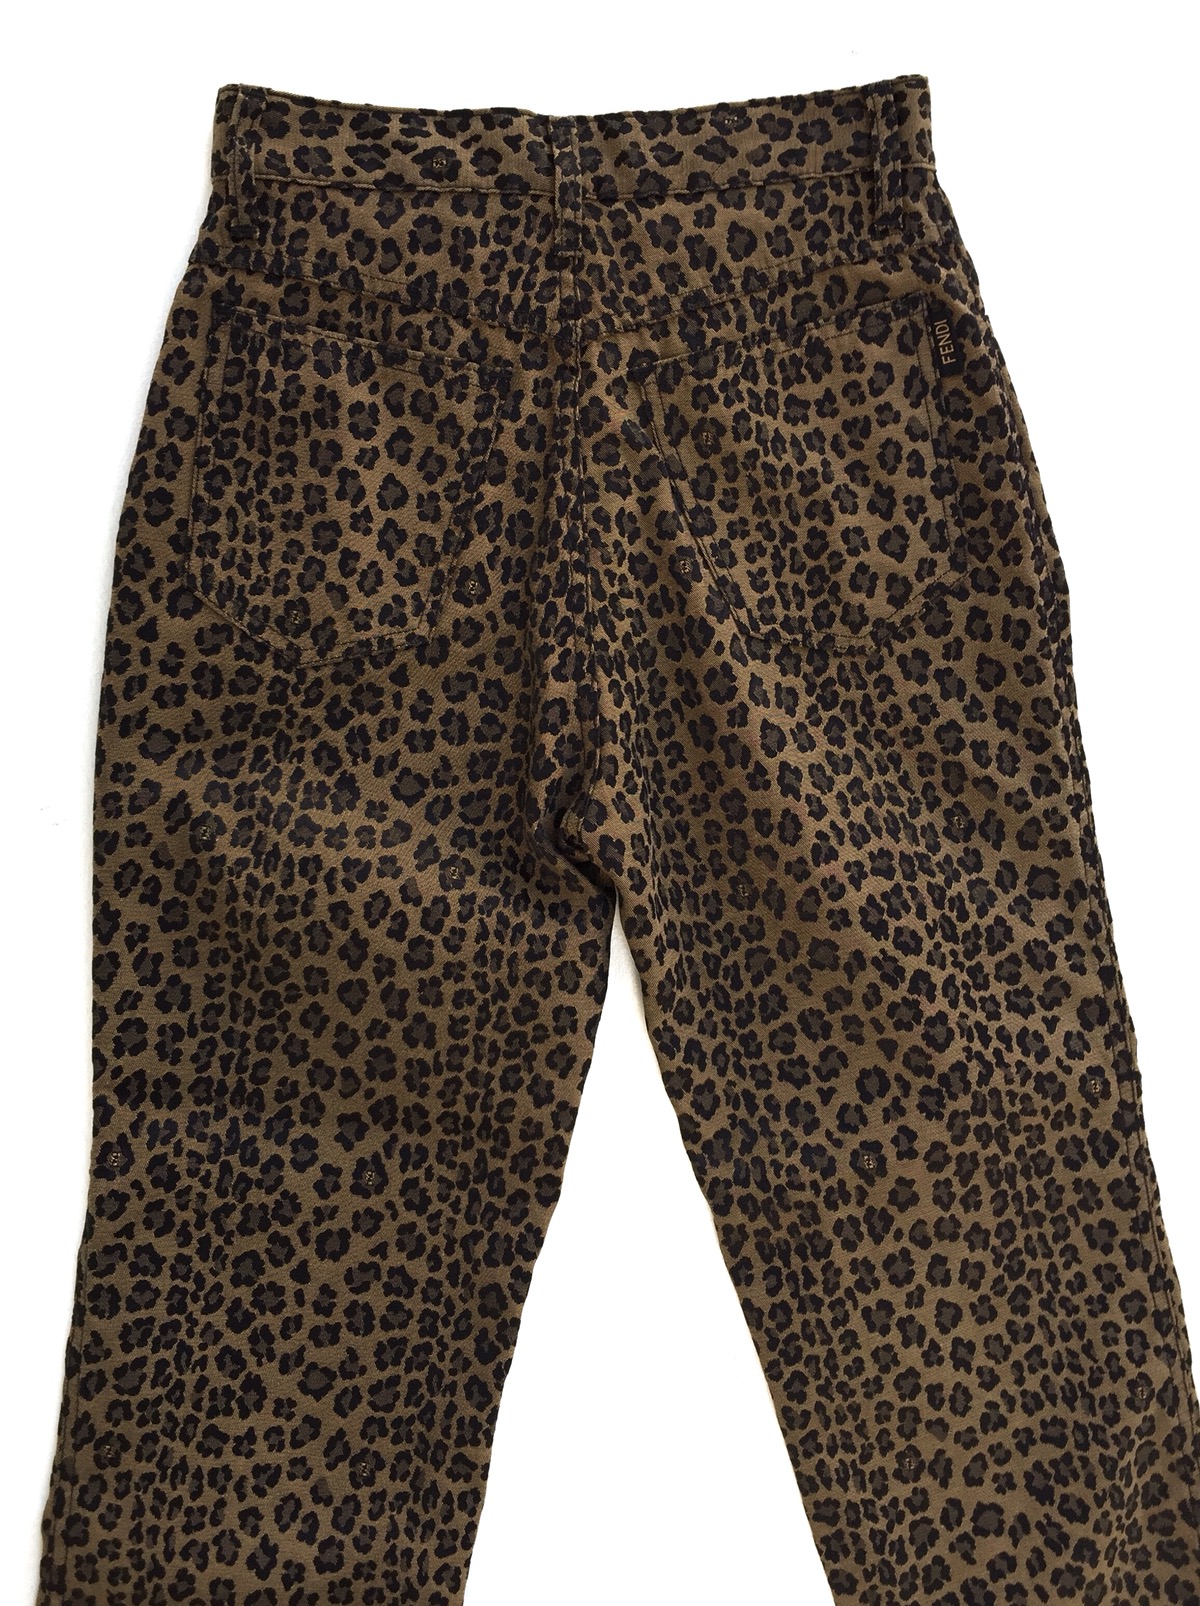 Vintage Authentic Fendi Leopard Pants - 4